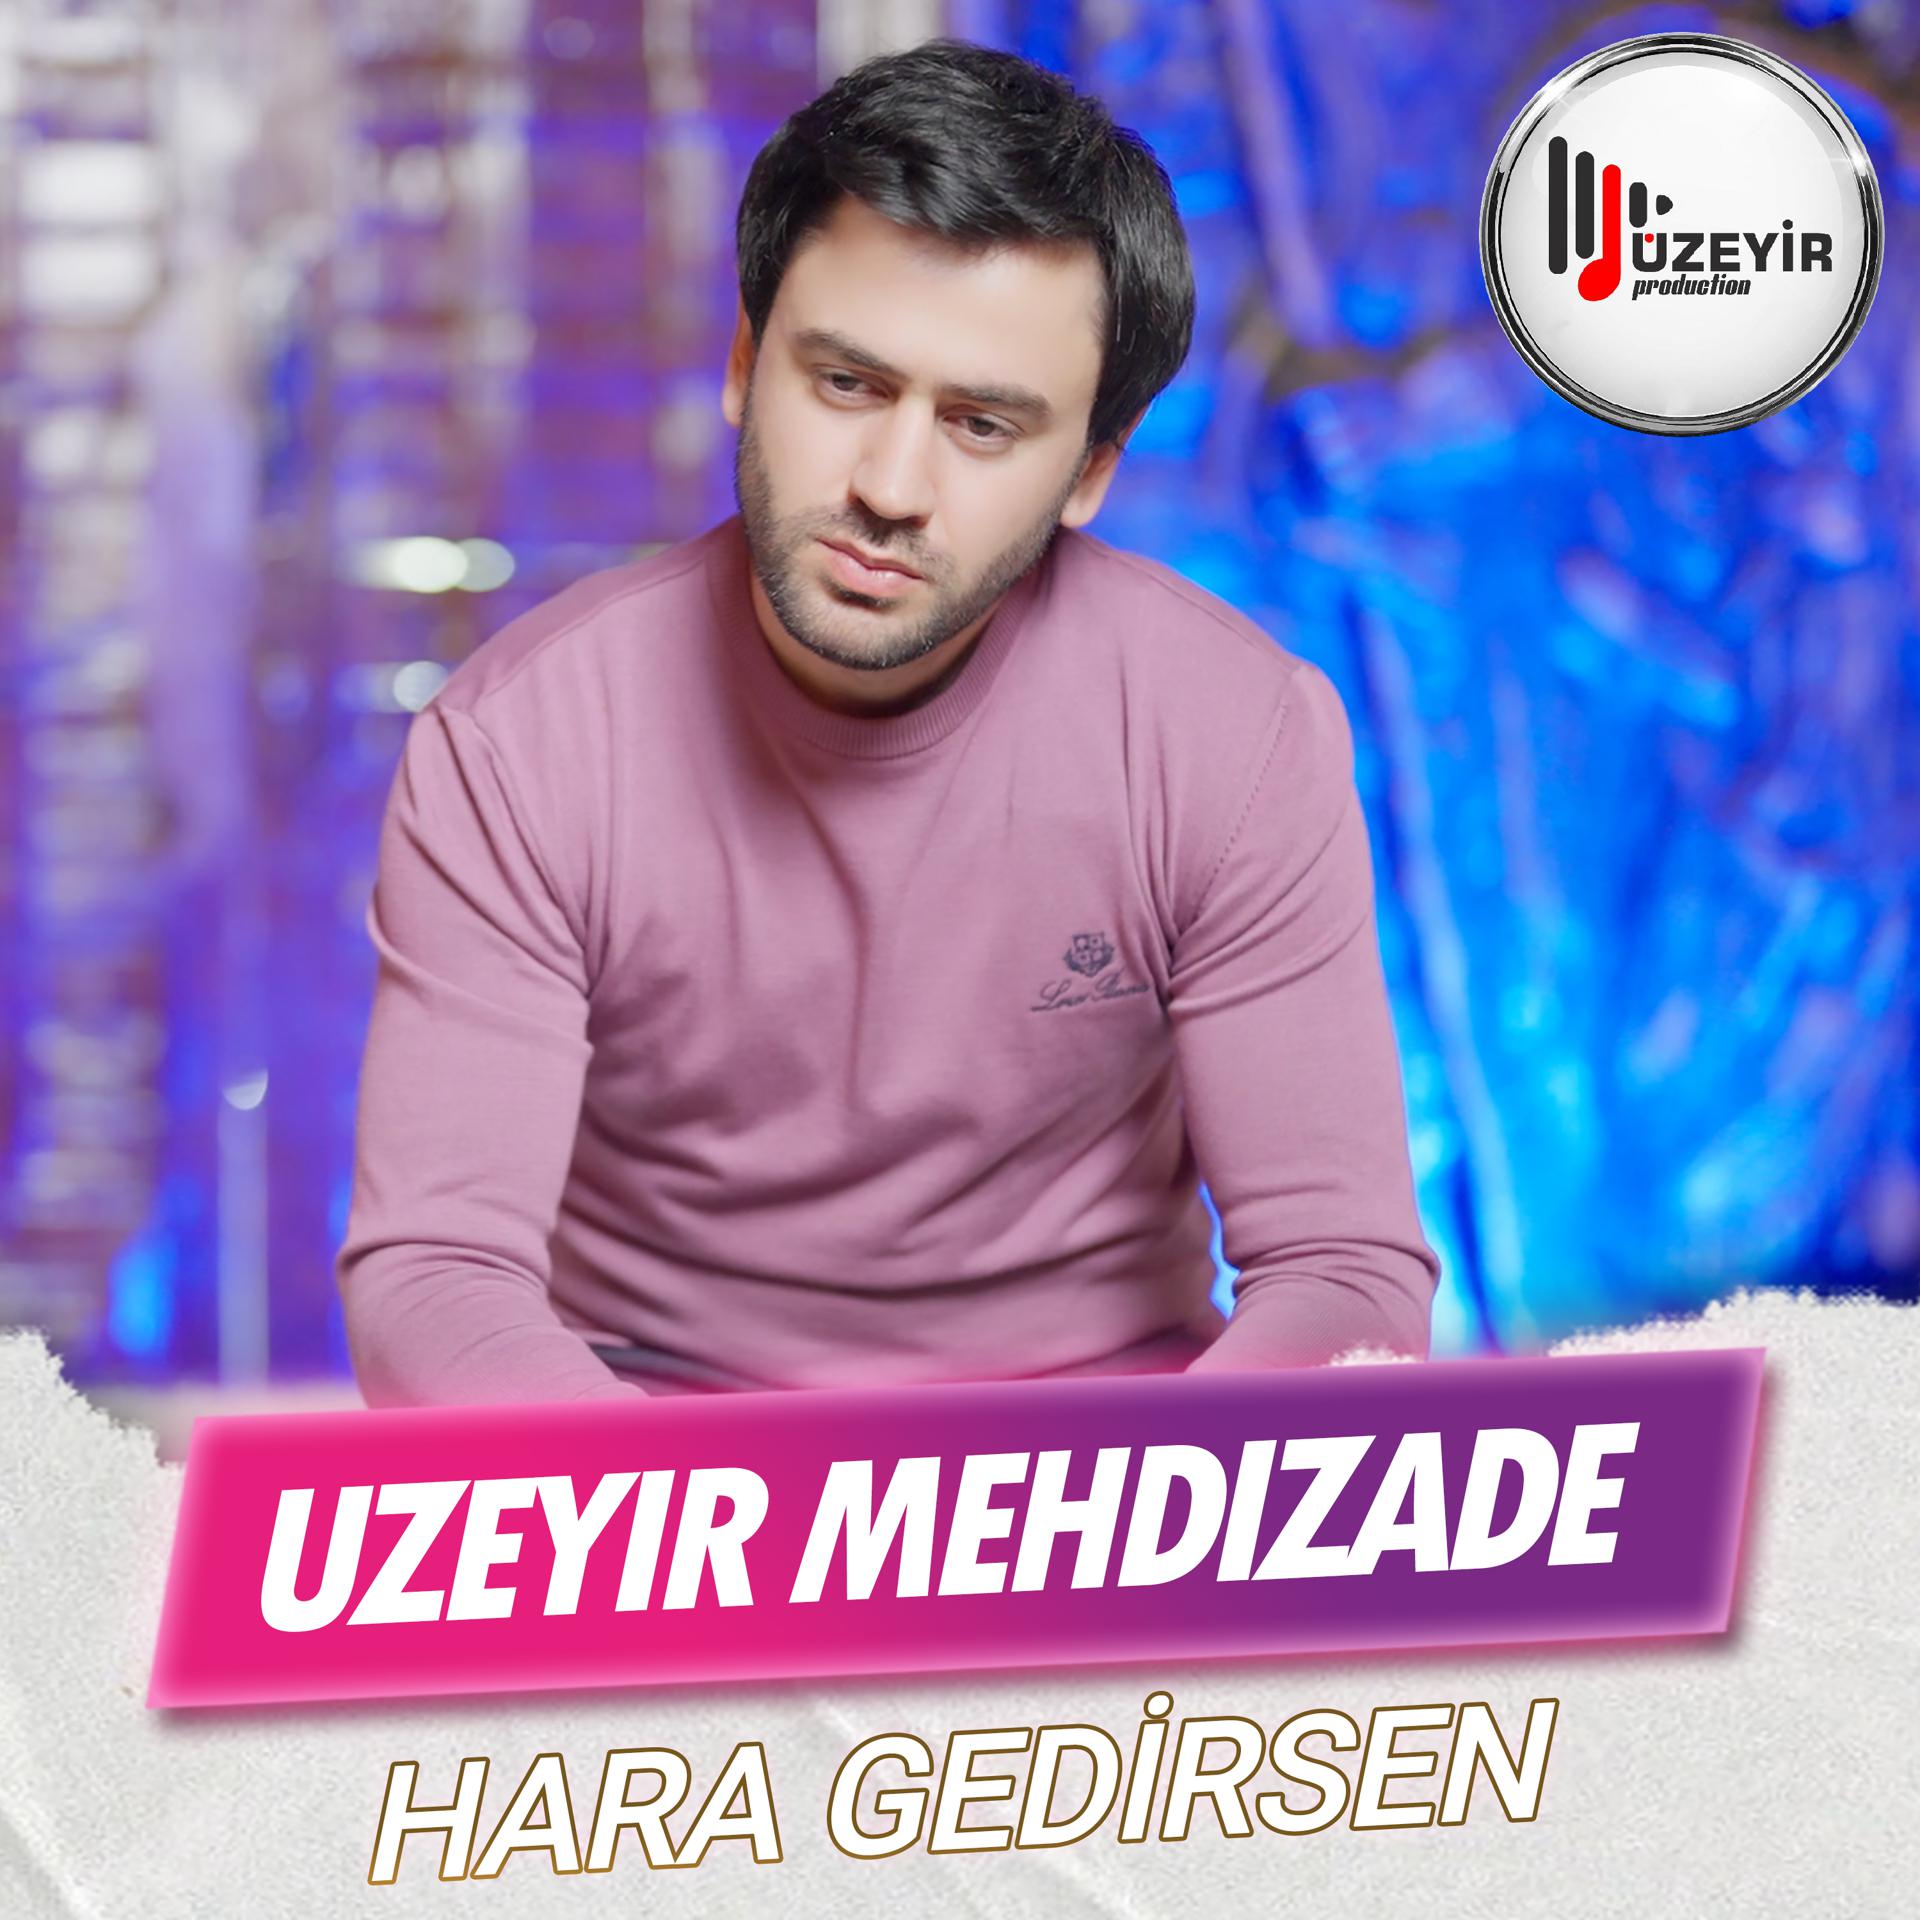 Uzeyir Mehdizade - фото